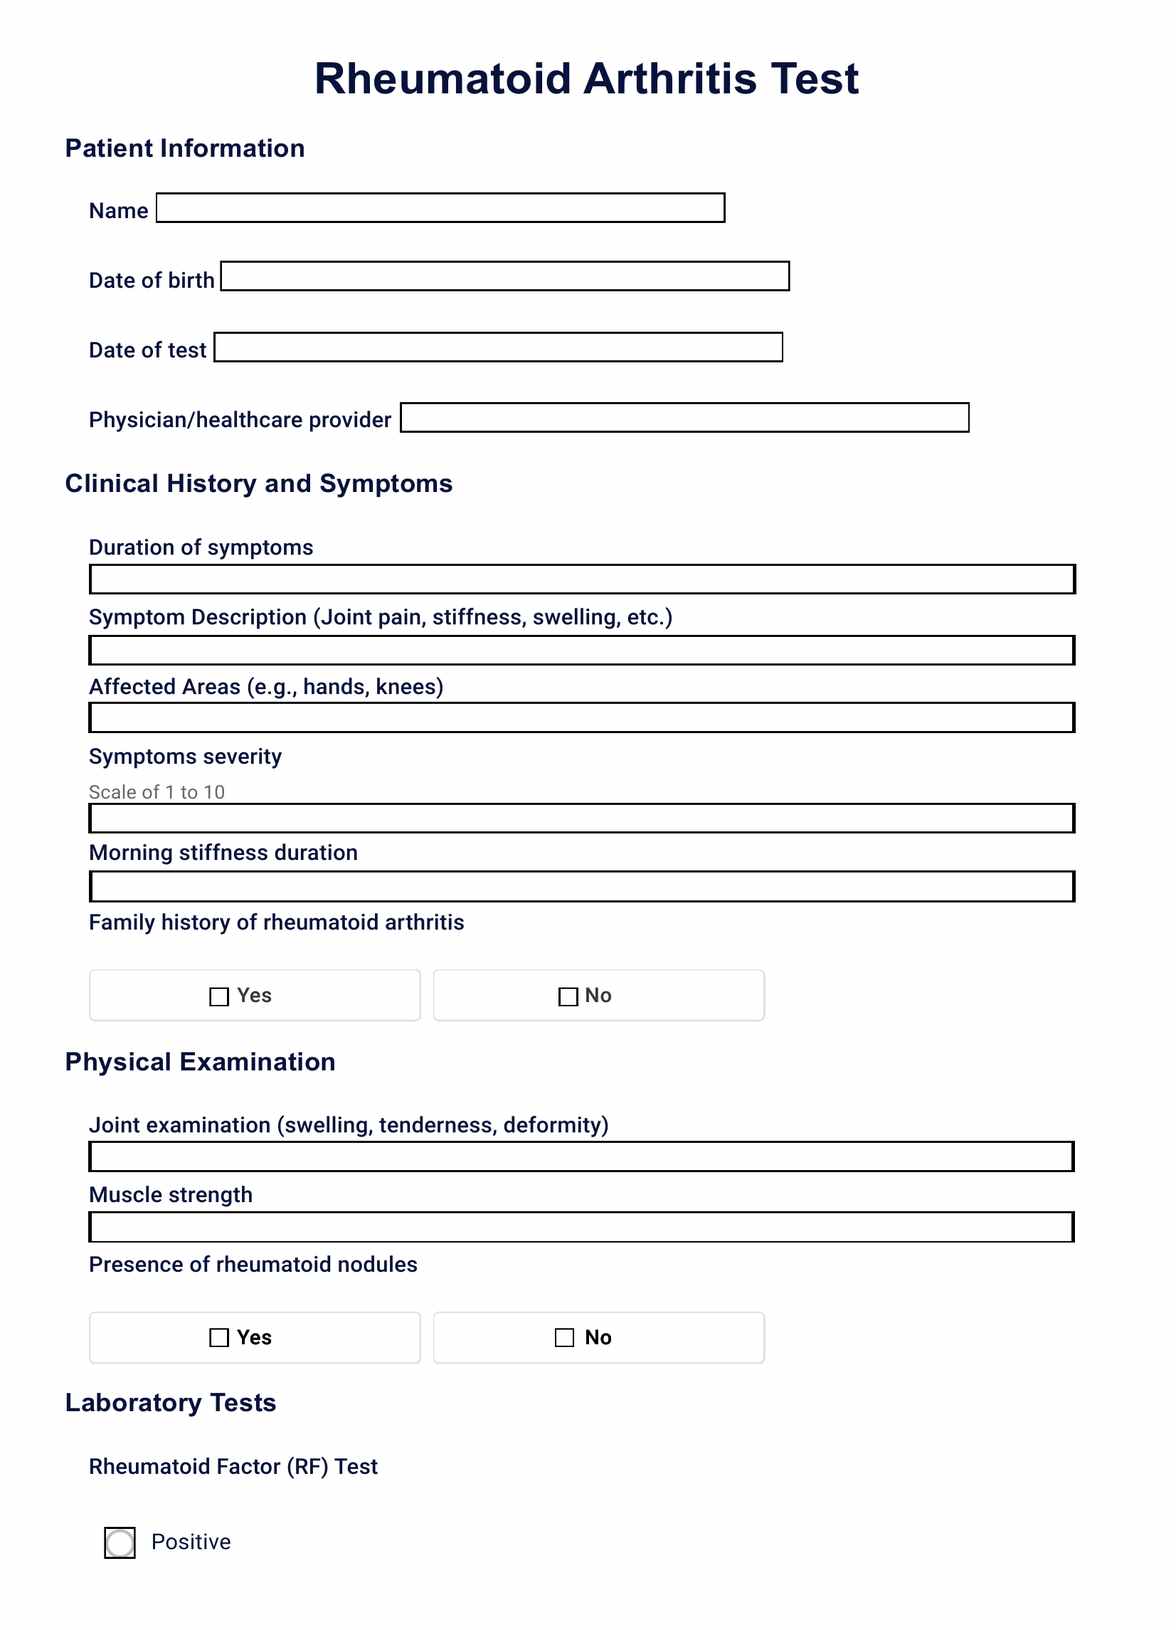 Rheumatoid Arthritis Test PDF Example